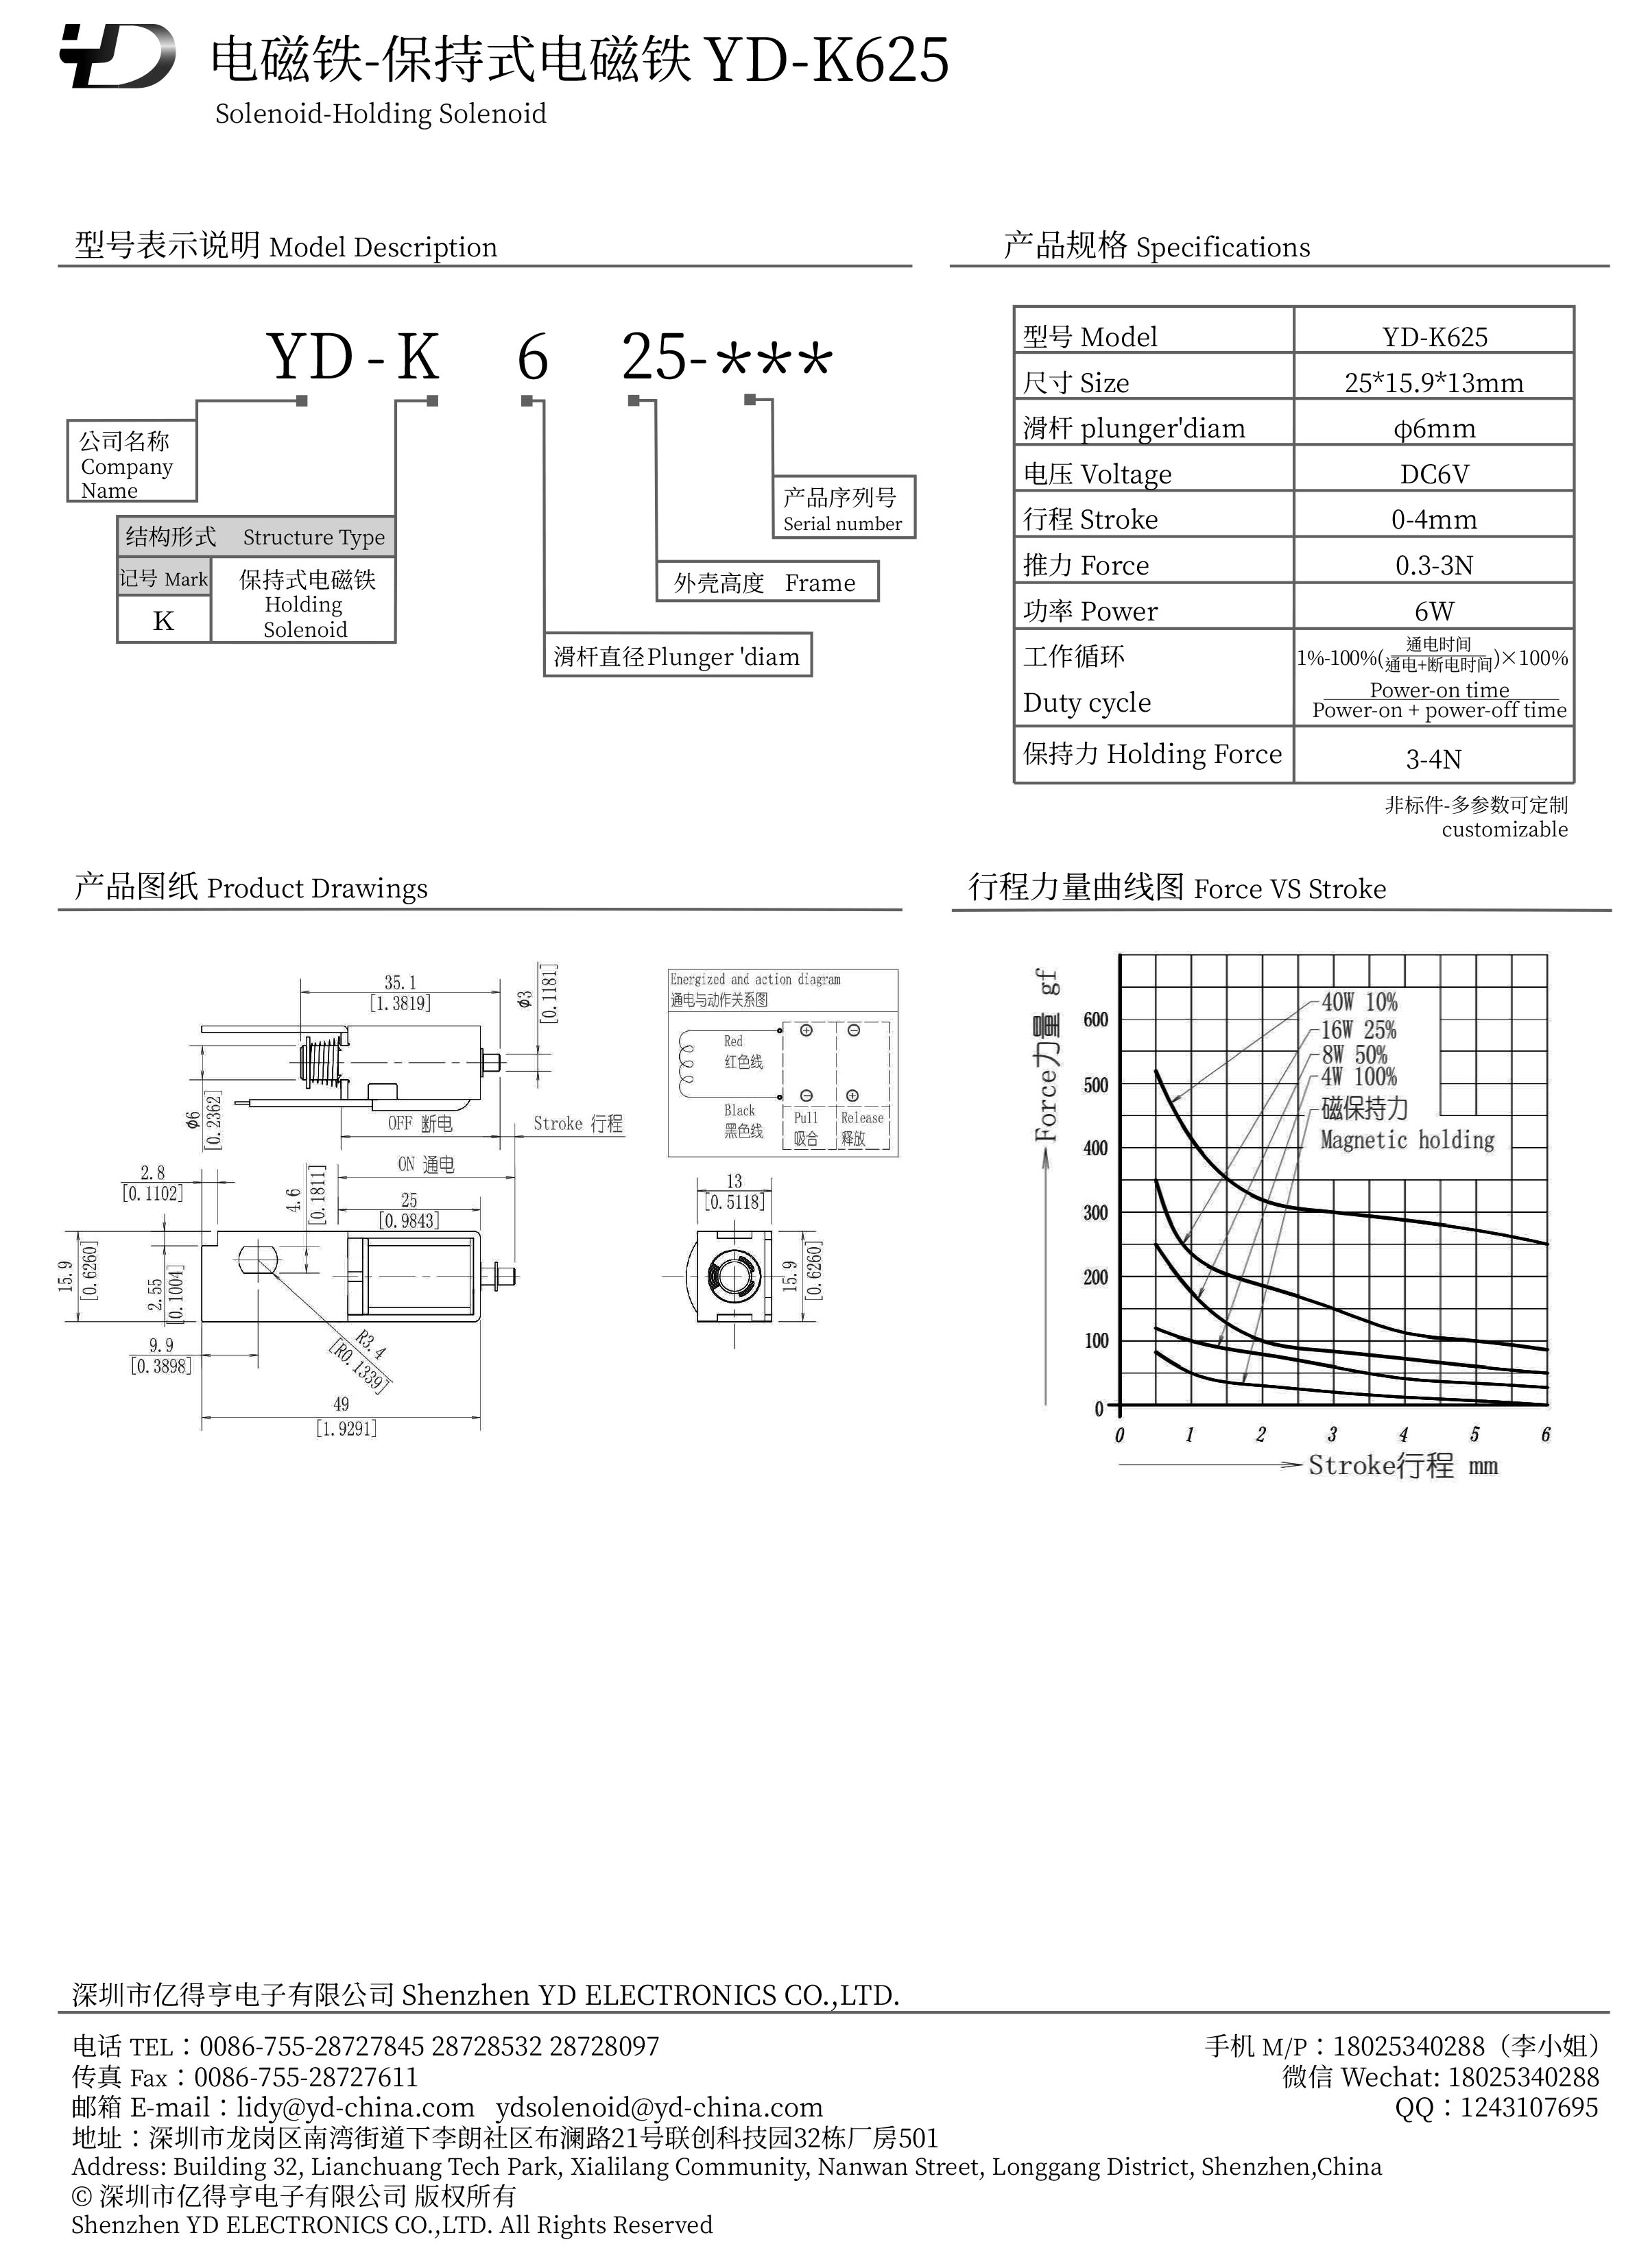 YD-K625-YD-PDF.jpg